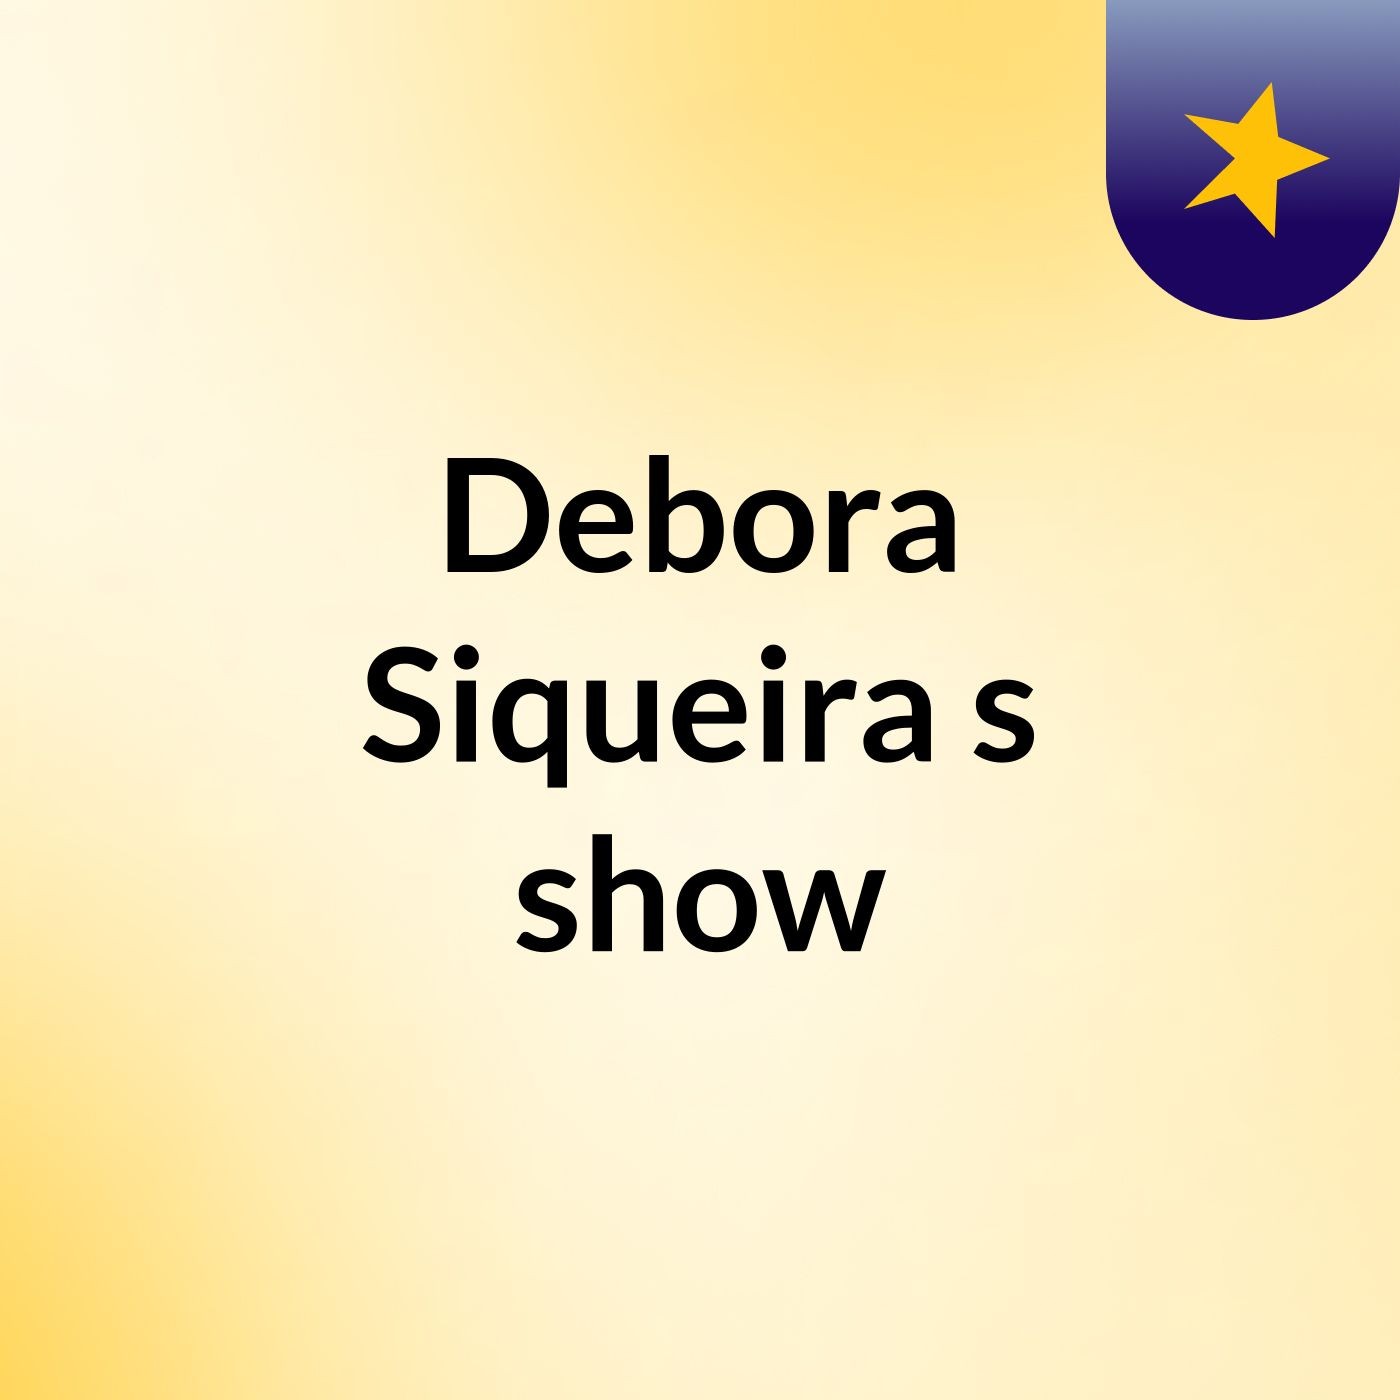 Debora Siqueira's show